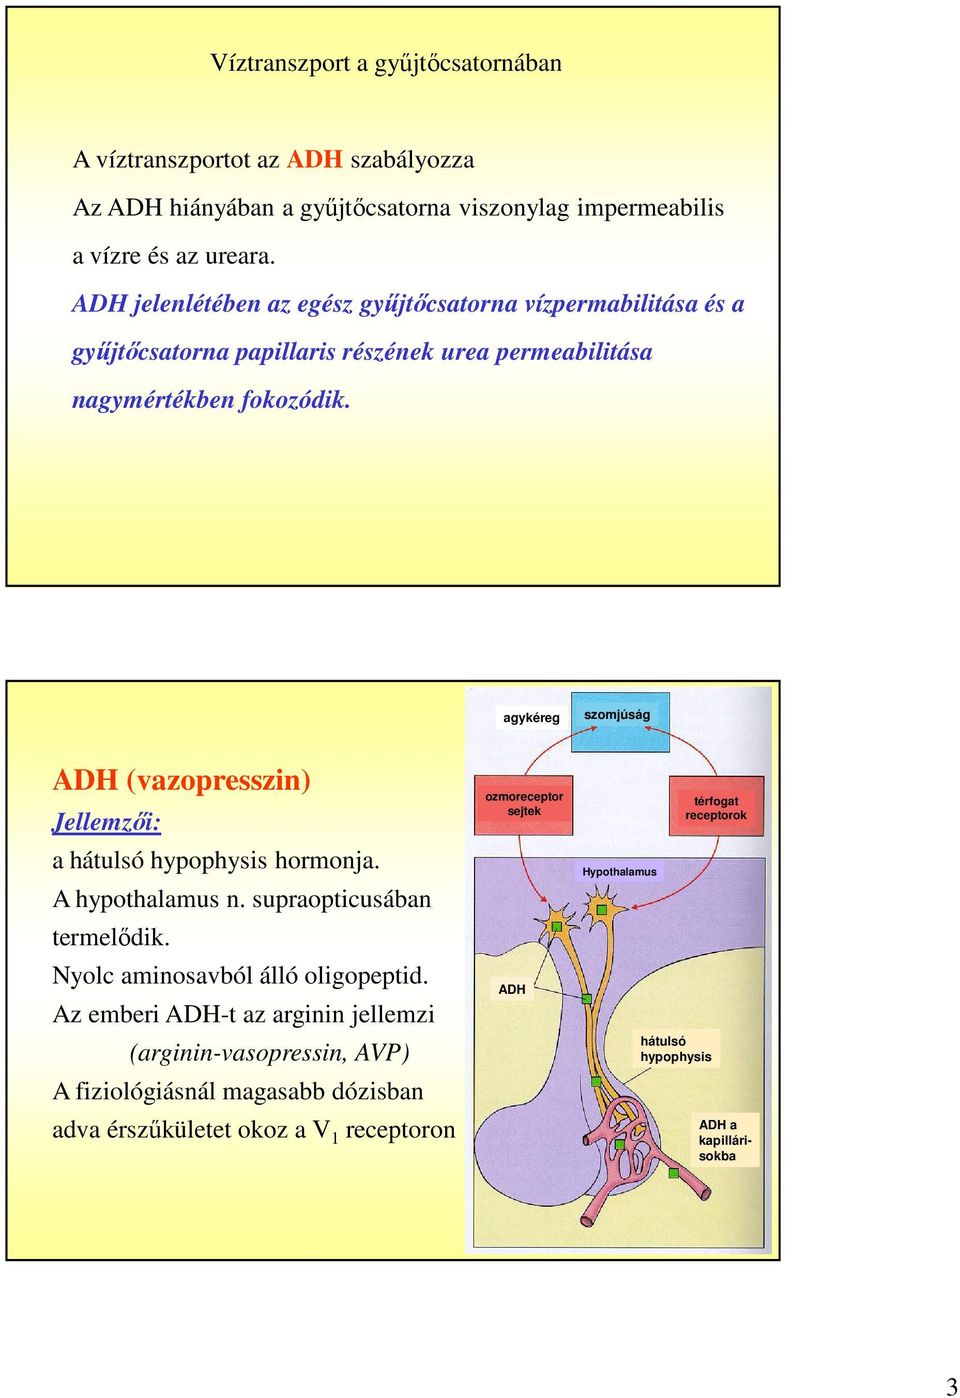 agykéreg szomjúság ADH (vazopresszin) Jellemzői: a hátulsó hypophysis hormonja. A hypothalamus n. supraopticusában termelődik. Nyolc aminosavból álló oligopeptid.